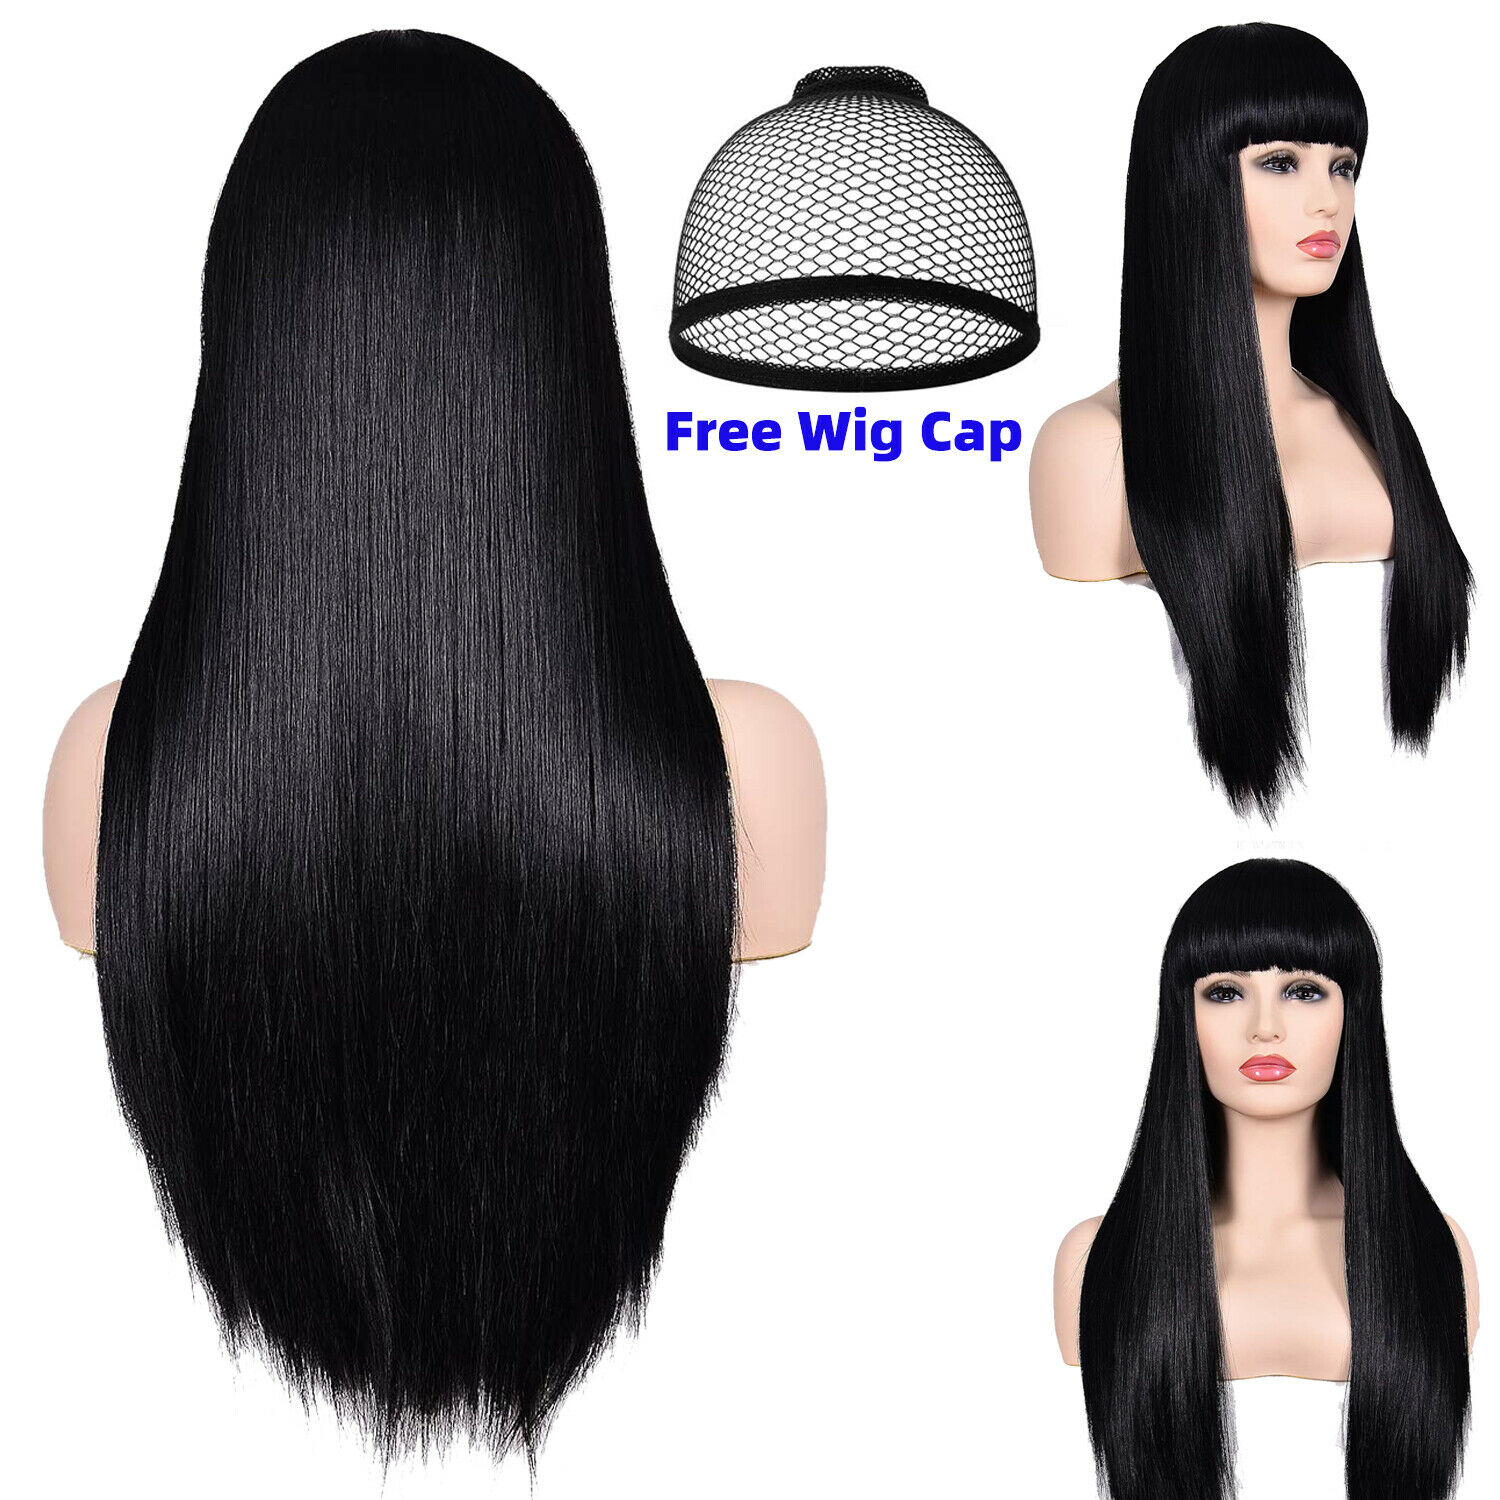 Synthetic Women Hair Wig Full Neat Bang Heat Resistant Fiber Long Black Wigs Cap